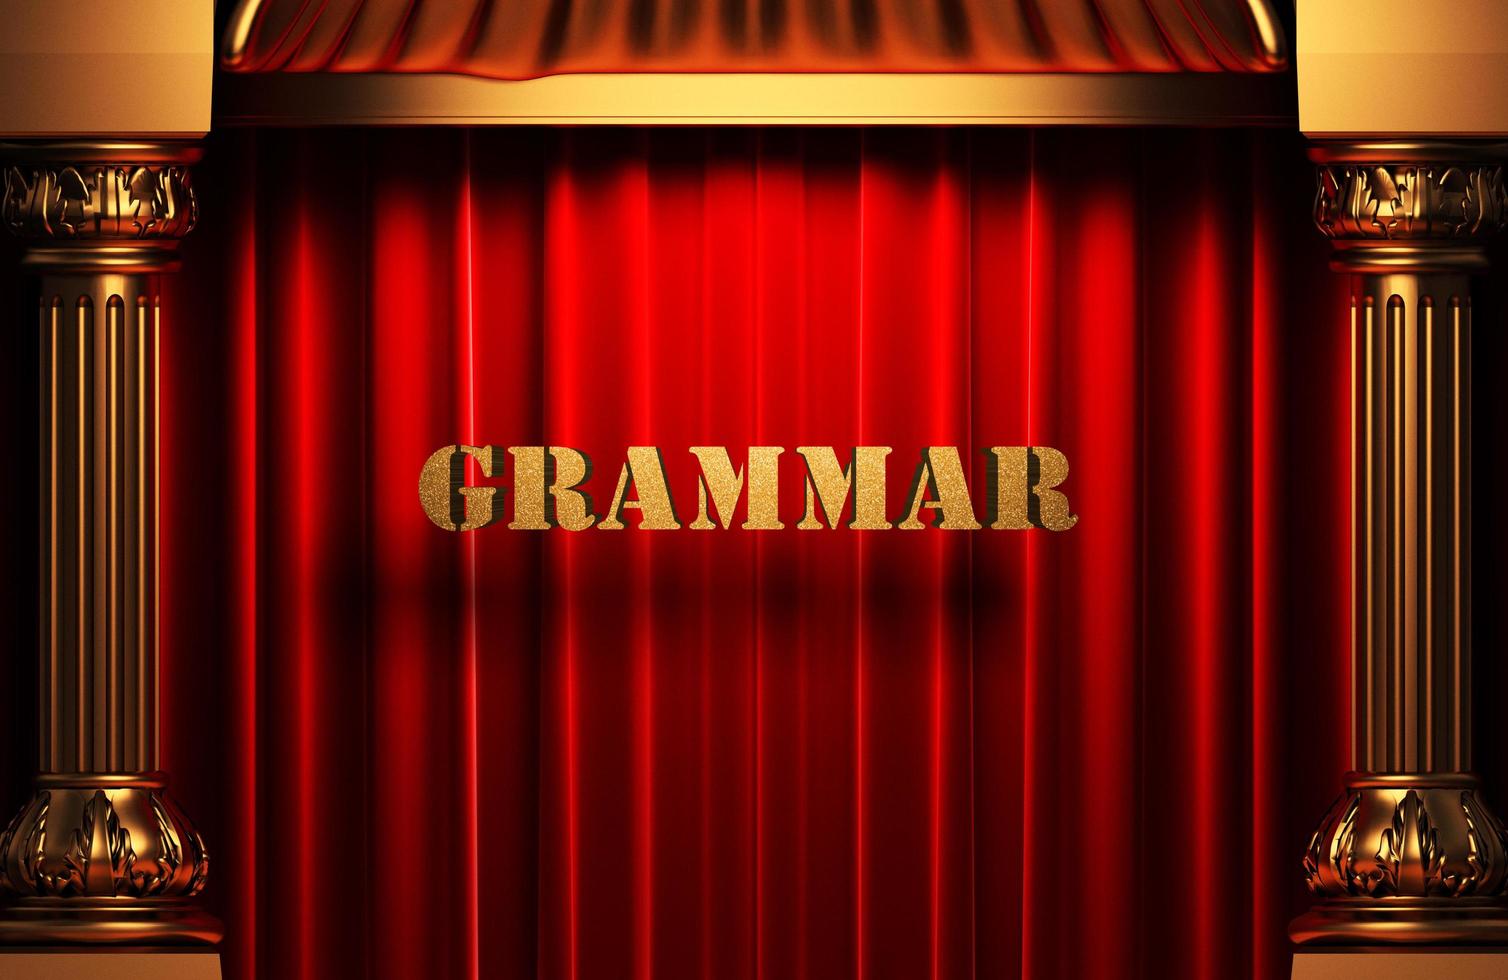 grammar golden word on red curtain photo